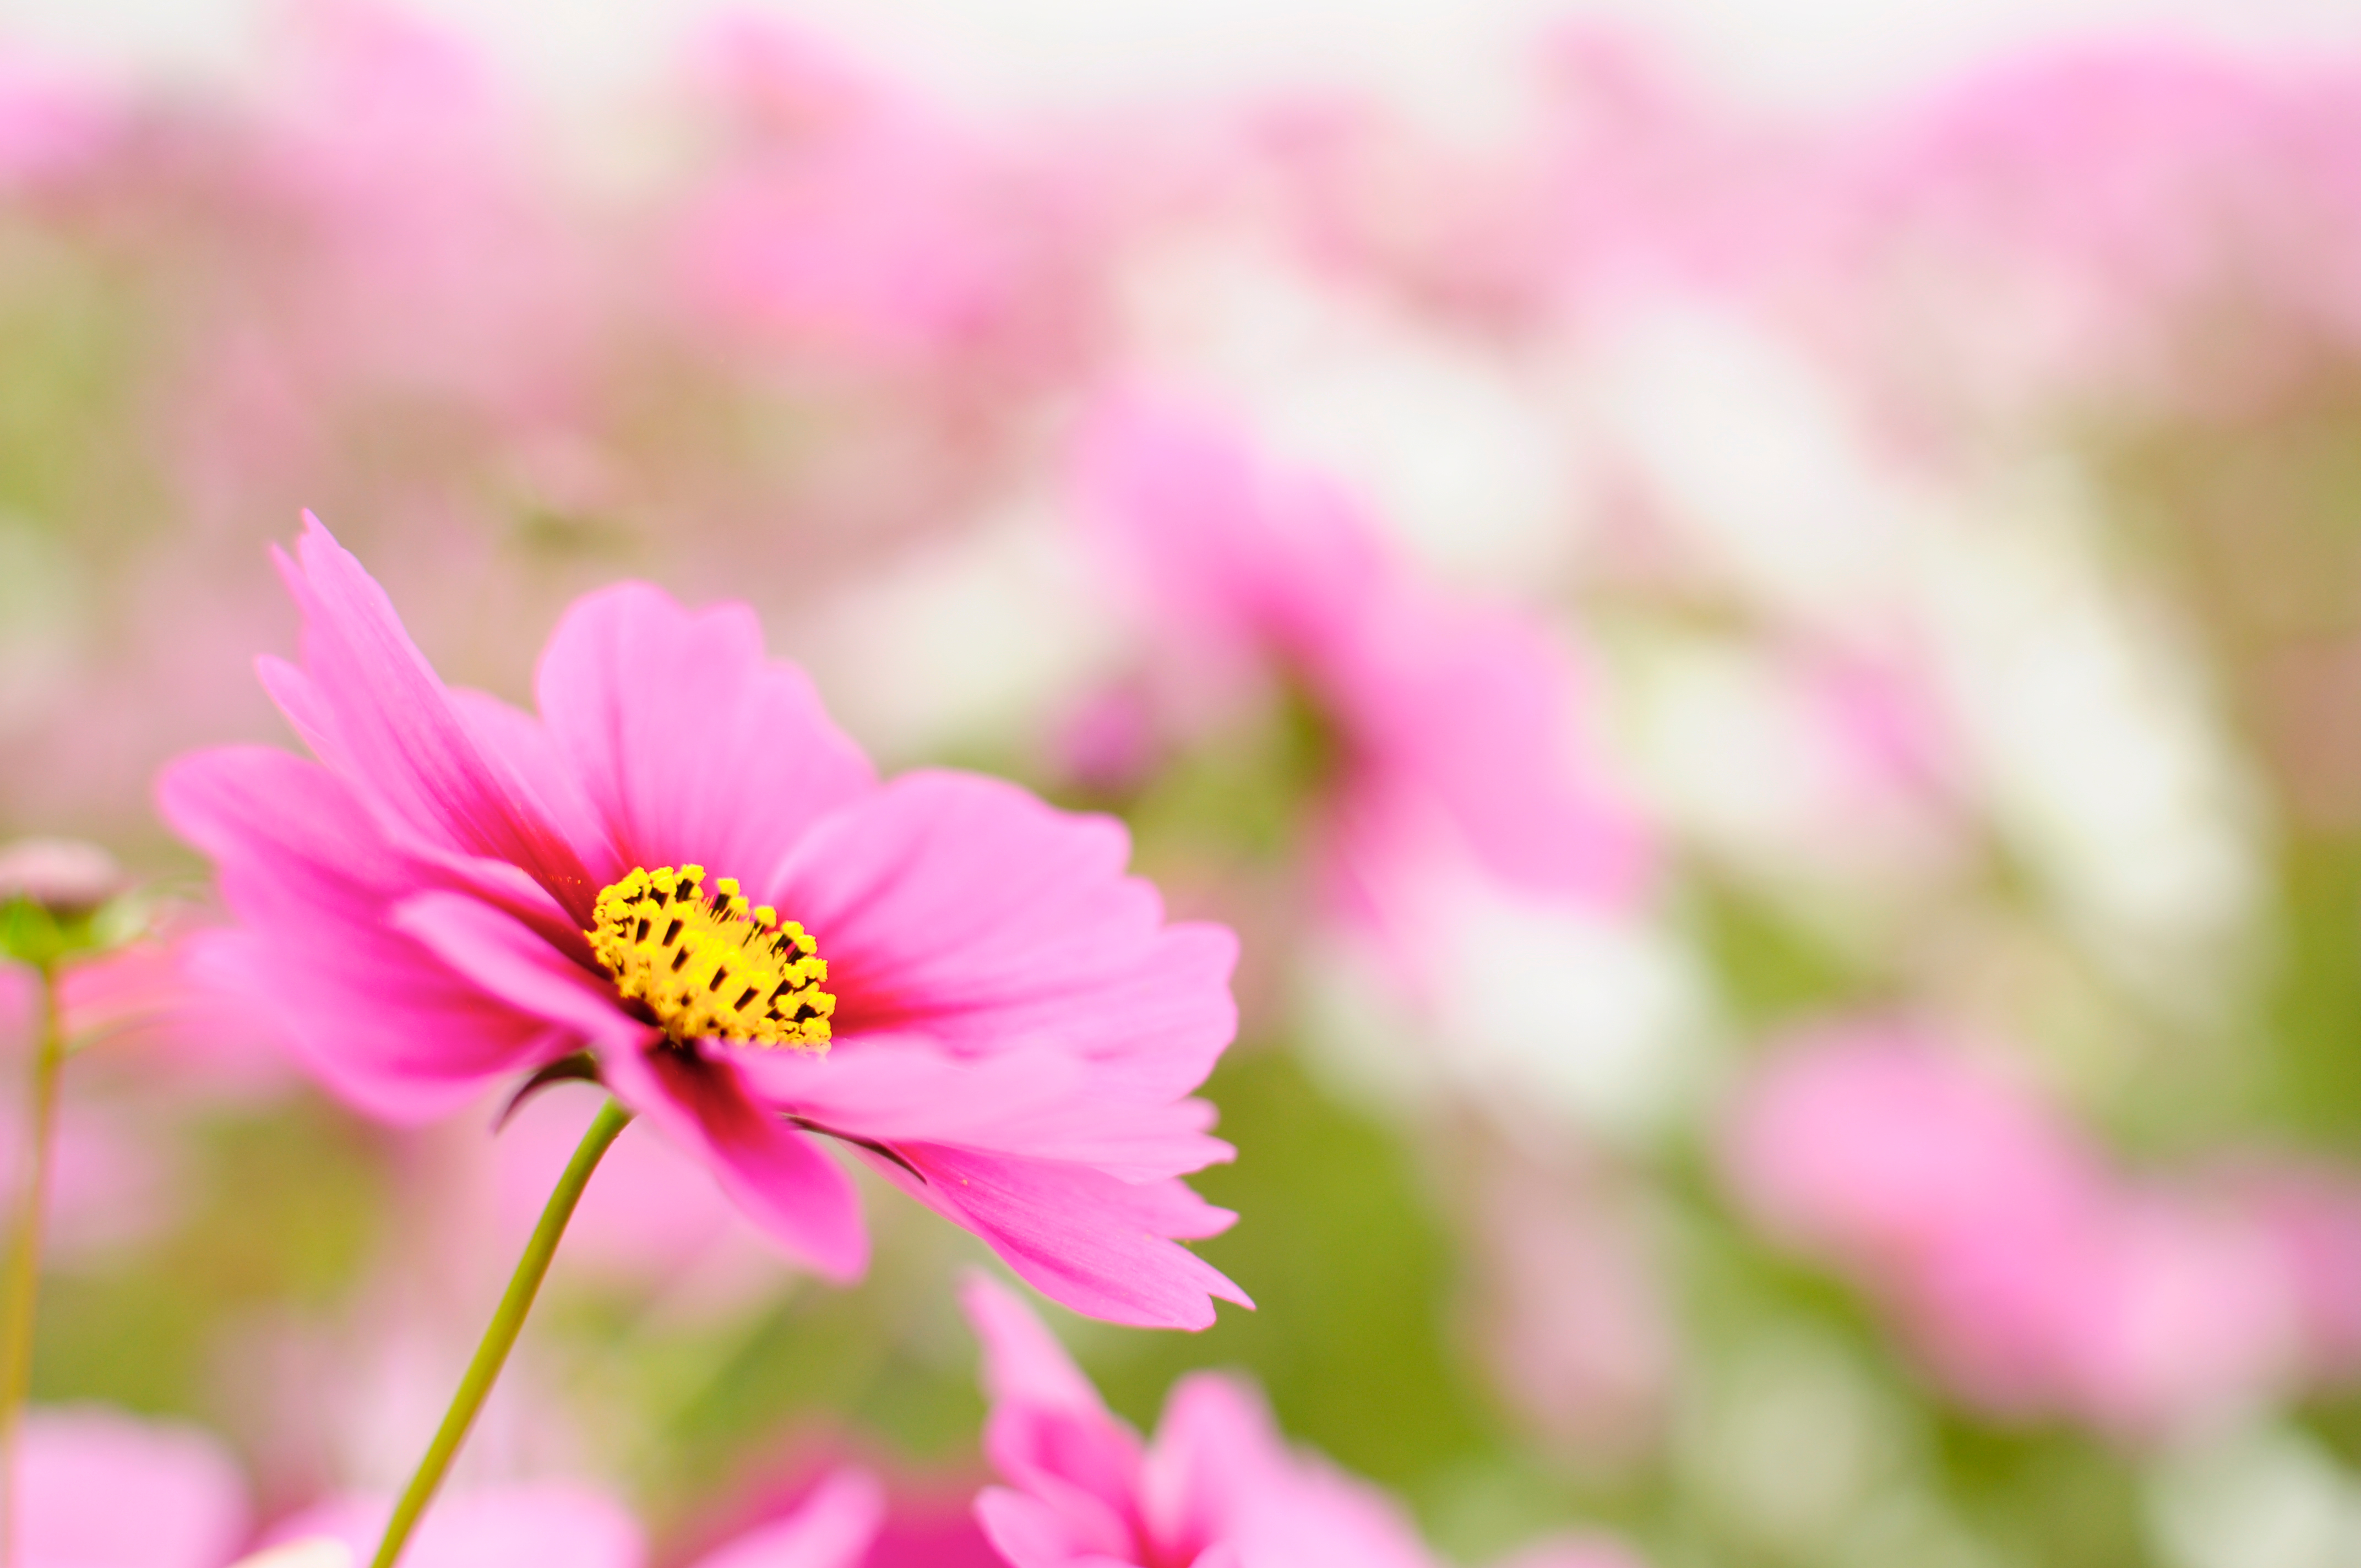 フリー写真素材 花 植物 キク科 コスモス 秋桜 ピンク色の花 画像素材なら 無料 フリー写真素材のフリーフォト